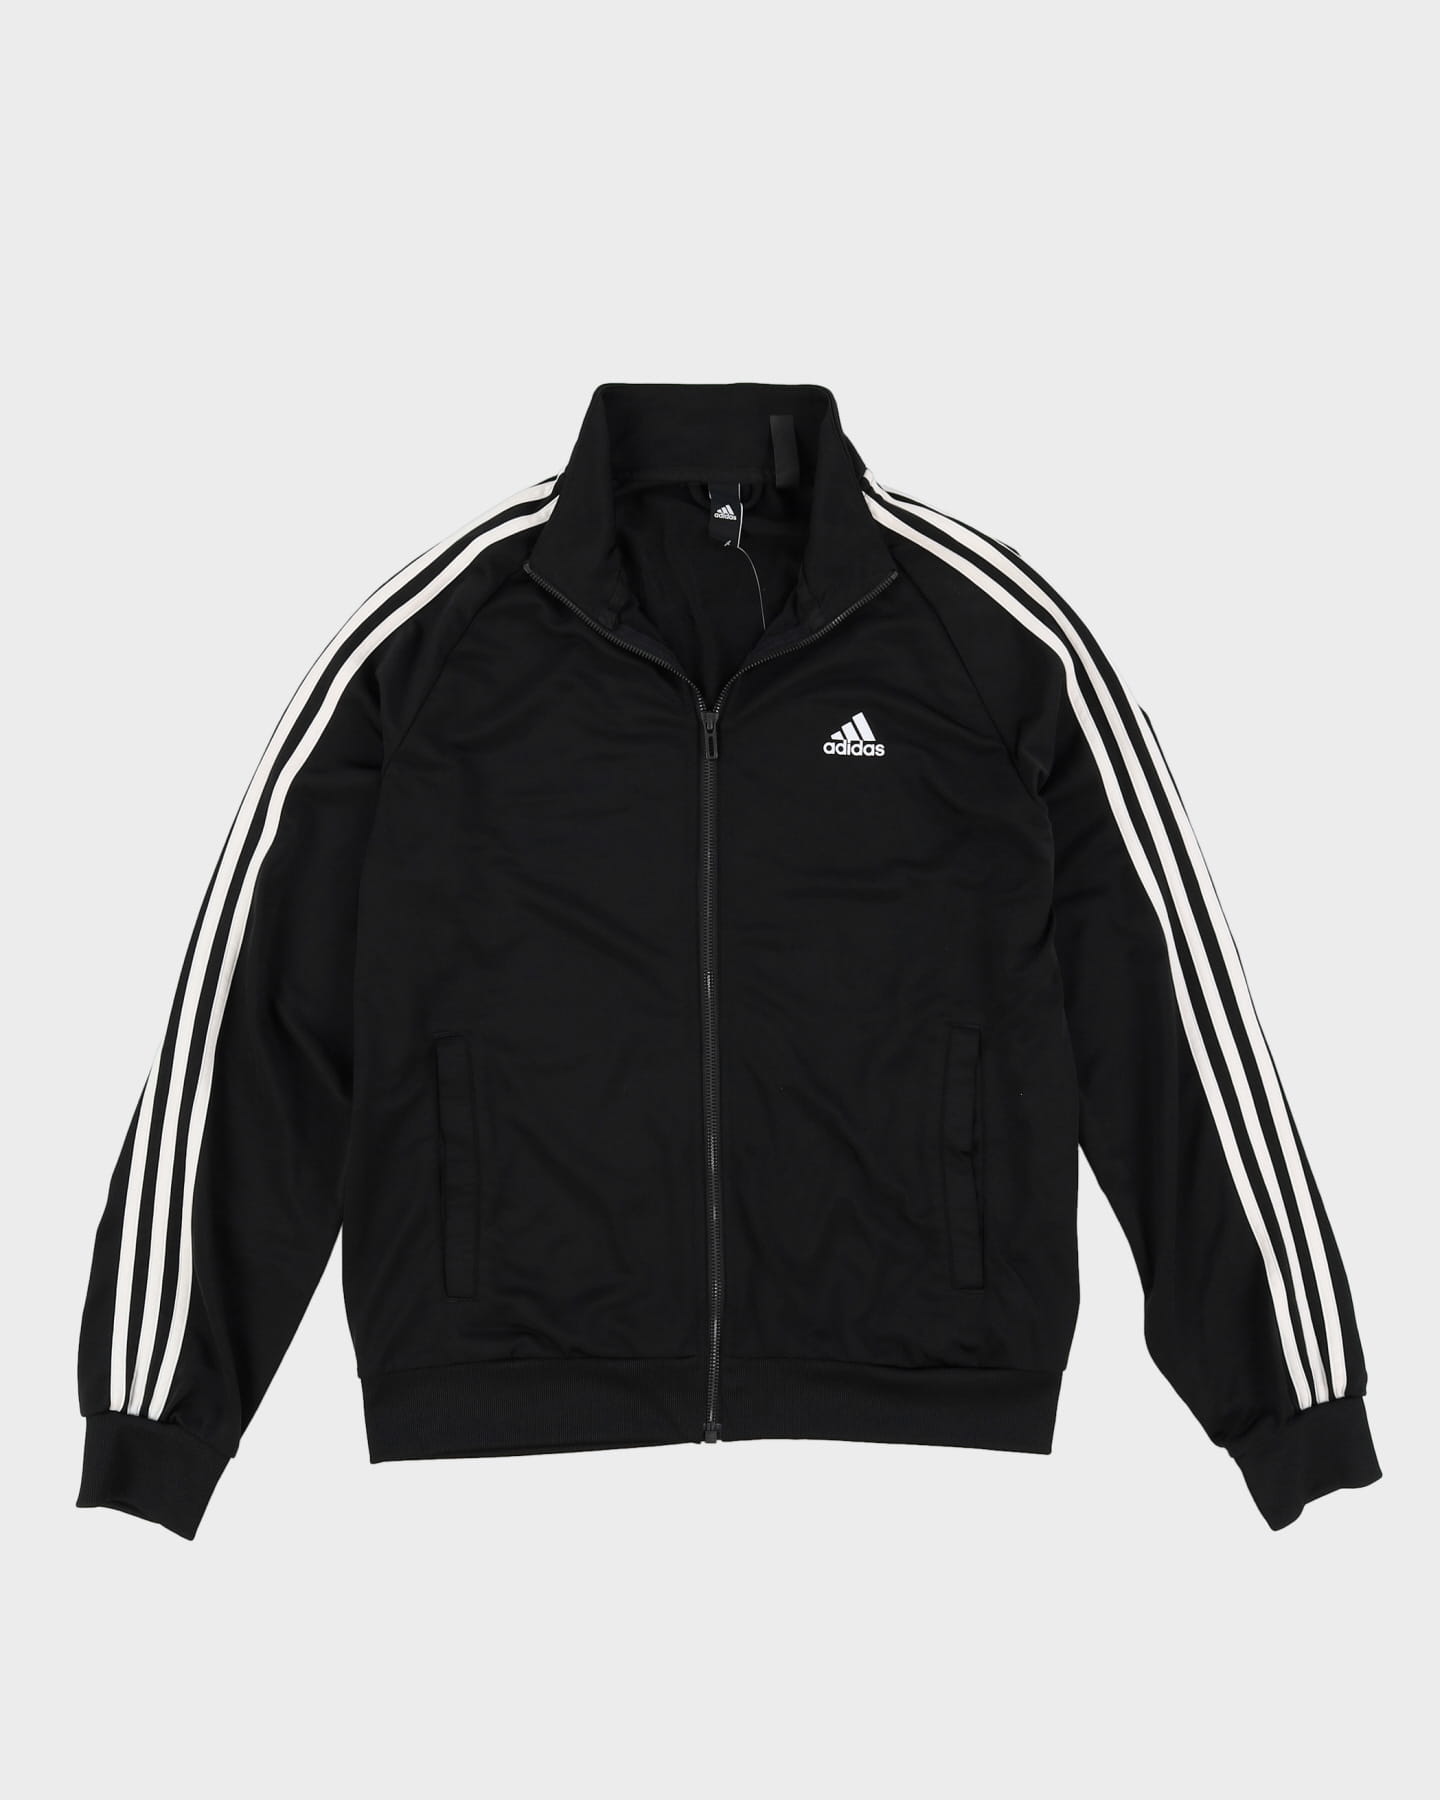 Adidas Black / White Track Jacket - M